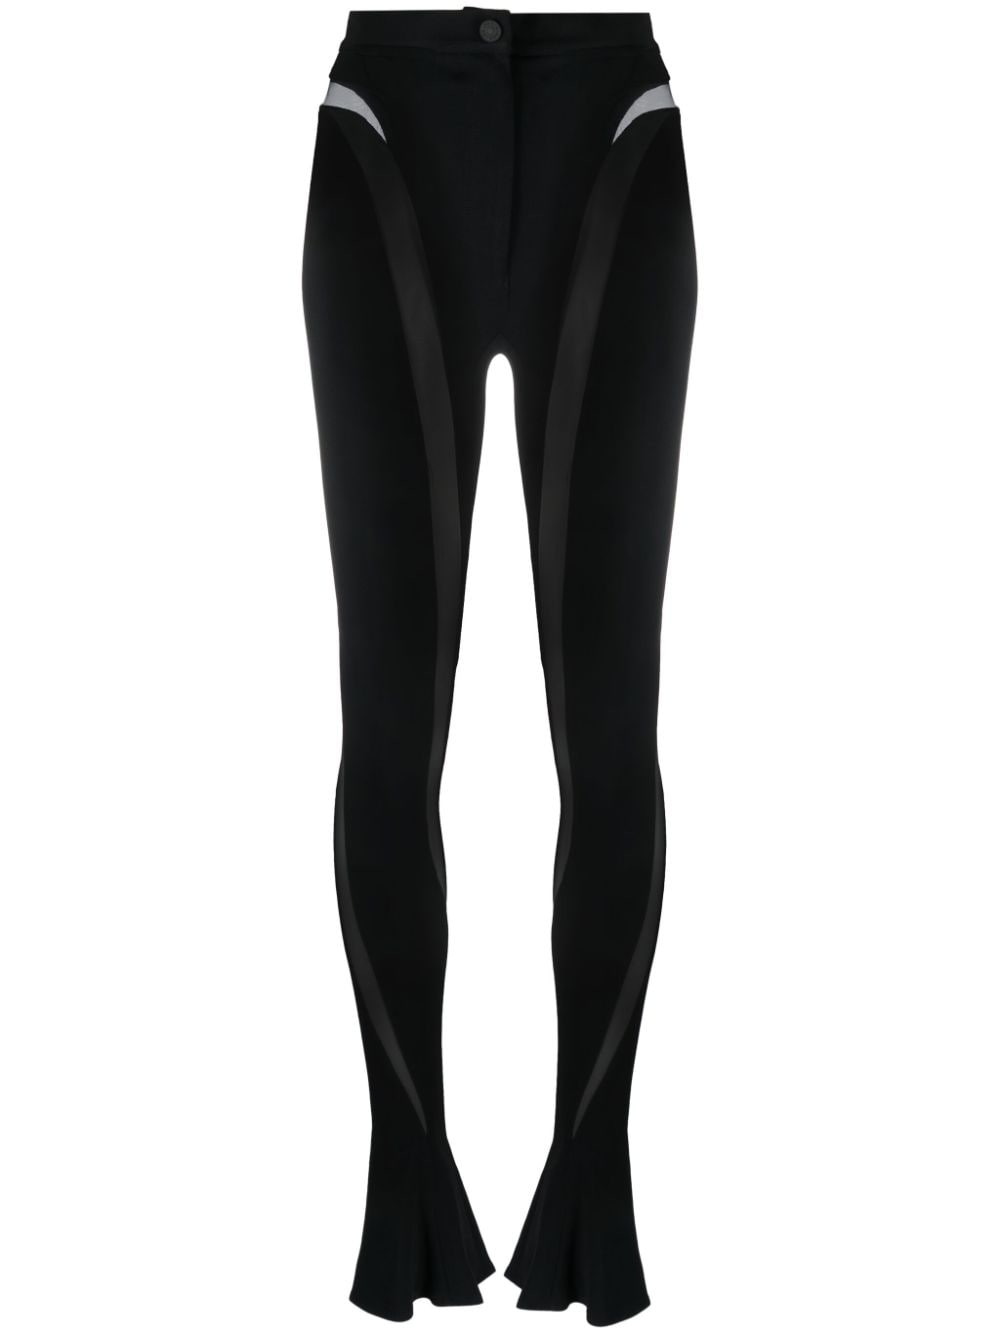 Sheer-Paneled Black Leggings for Women - FW23 Collection